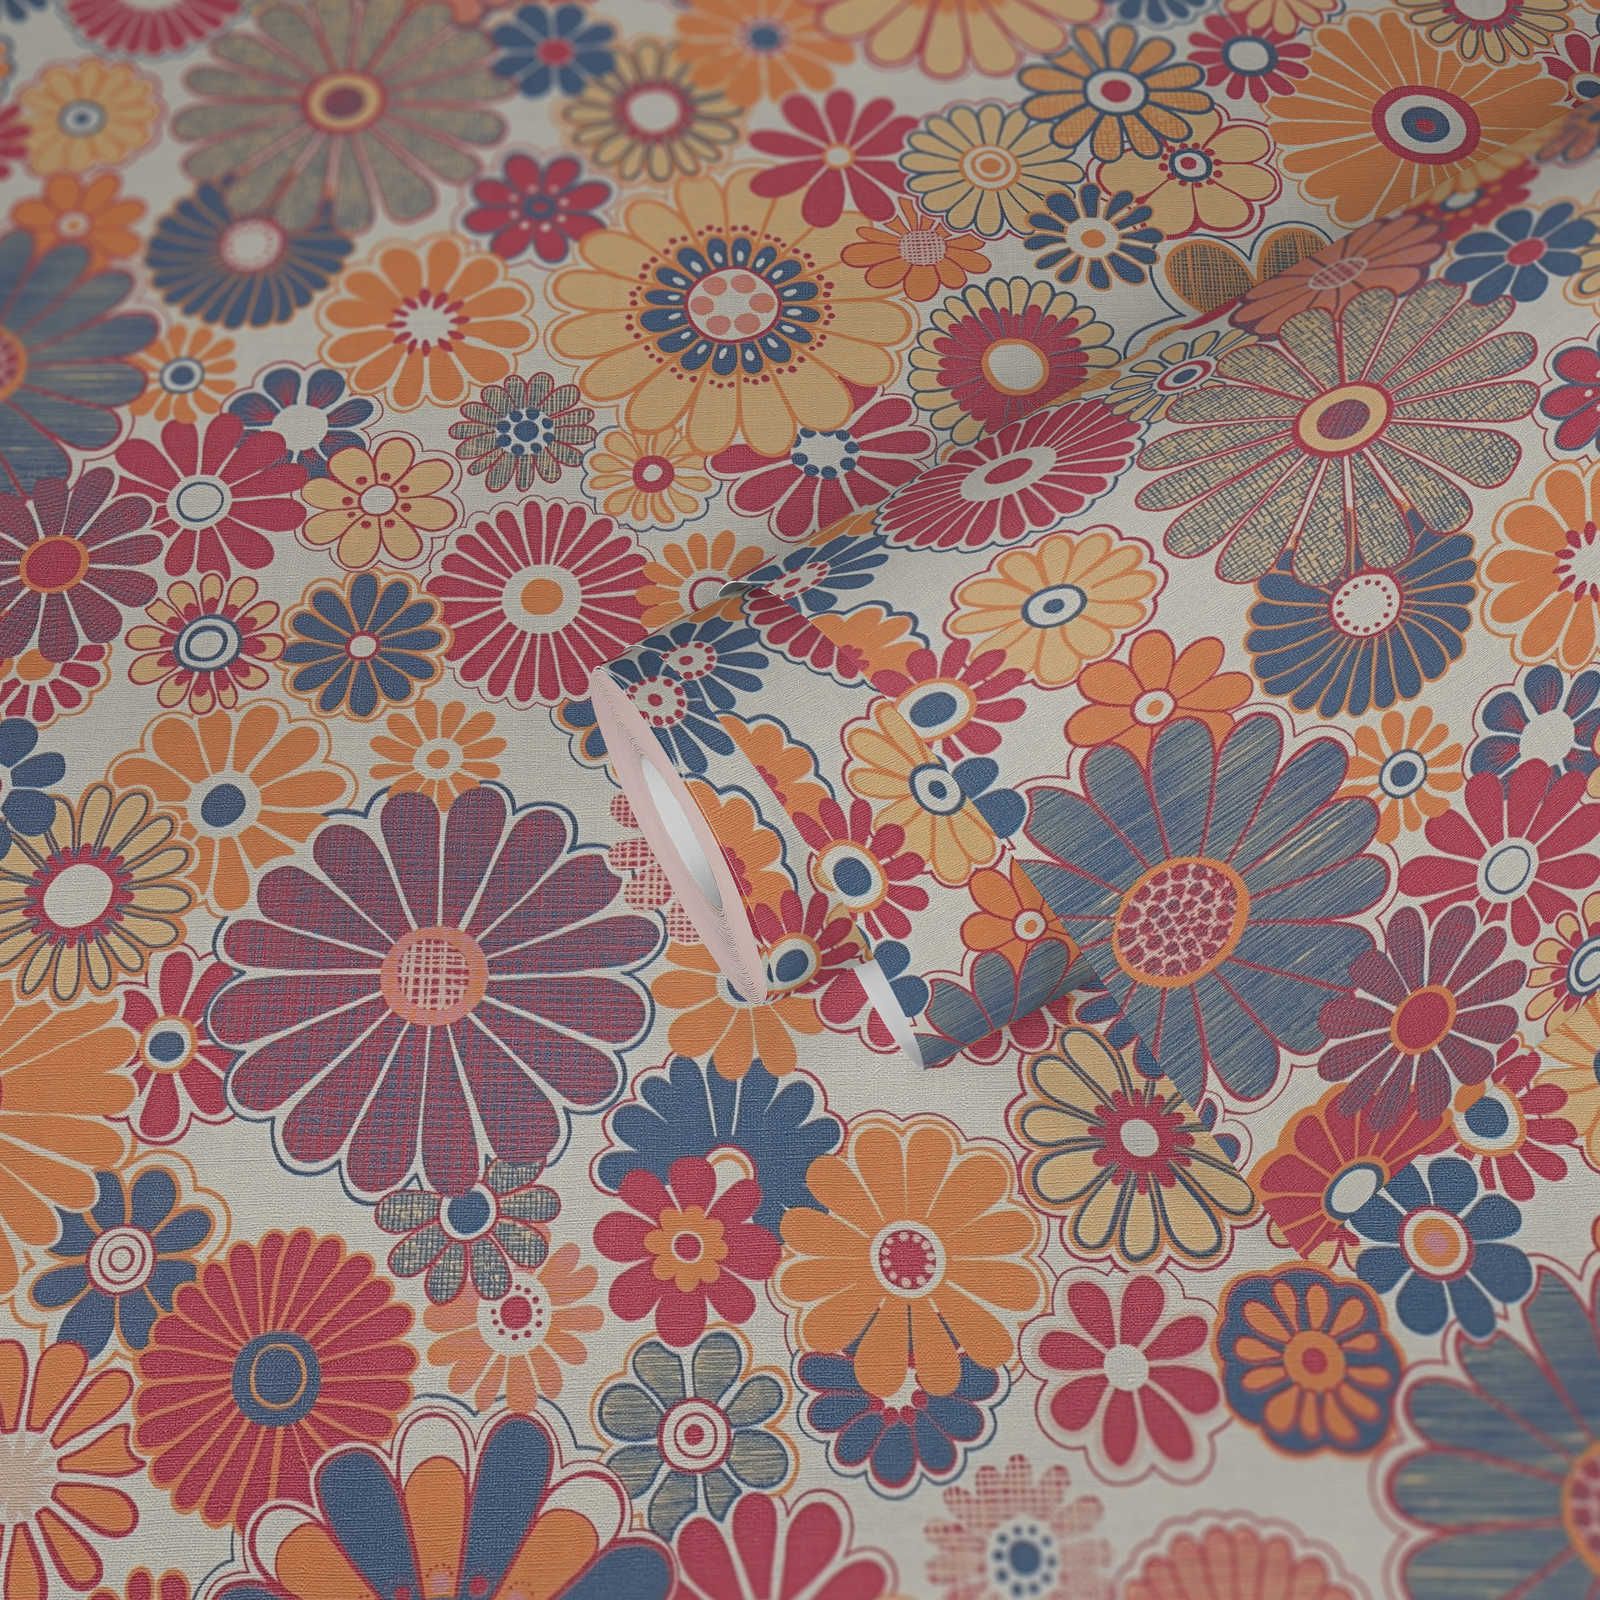             papier peint en papier intissé rétro à motifs floraux - rouge, bleu, orange
        